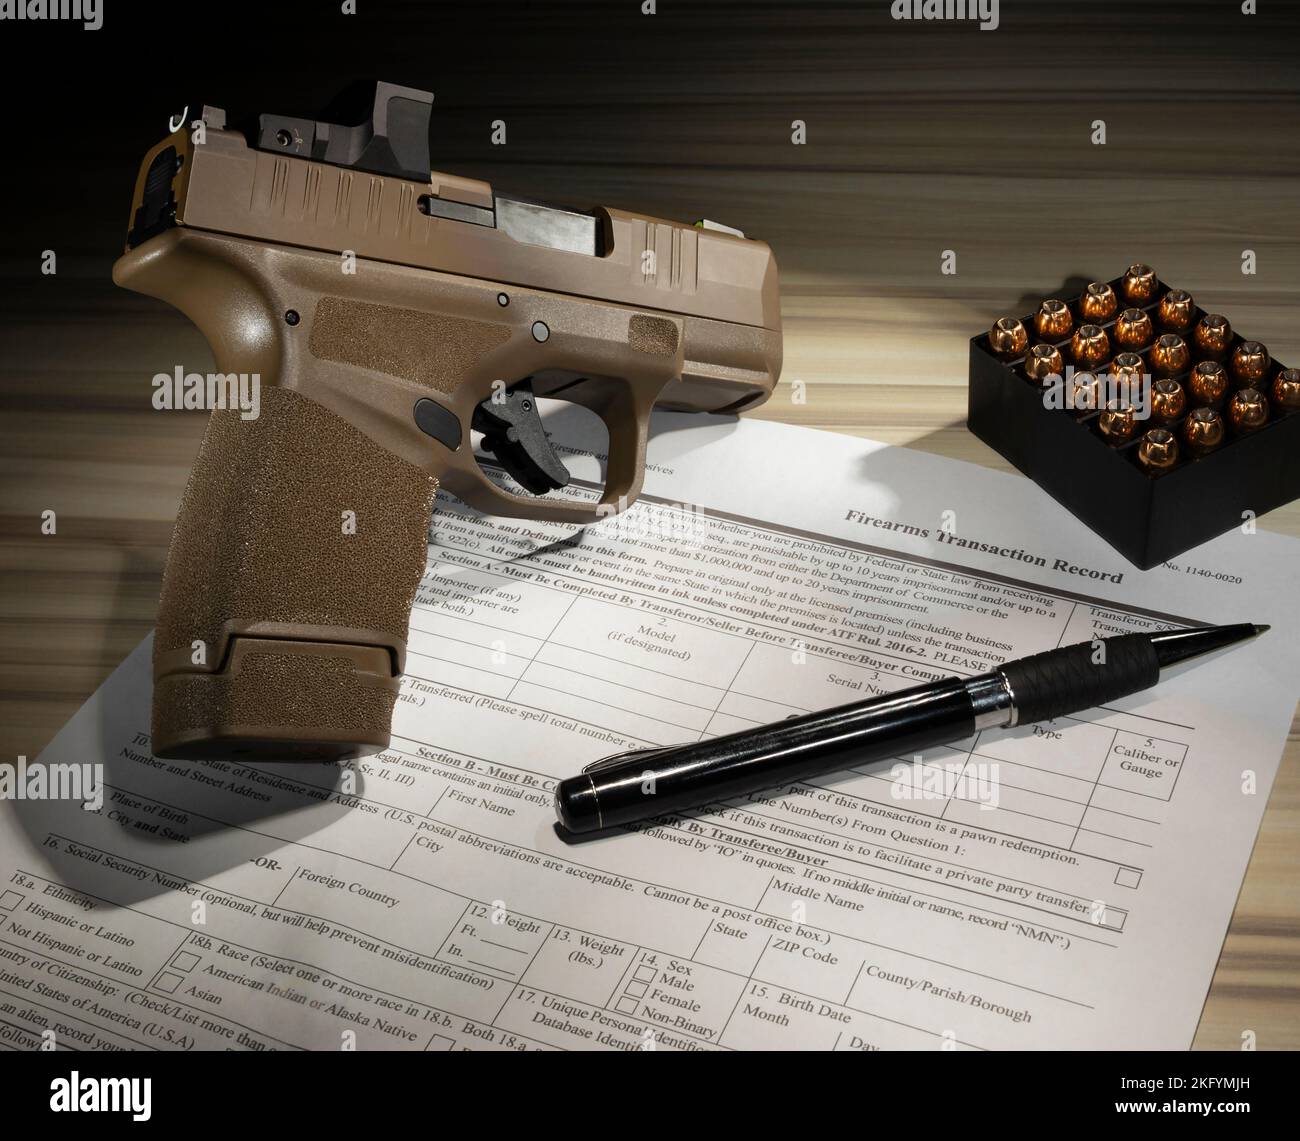 Pistola e cartucce di pubblico dominio modulo 4473 che è richiesto per l'acquisto di un'arma da fuoco Foto Stock